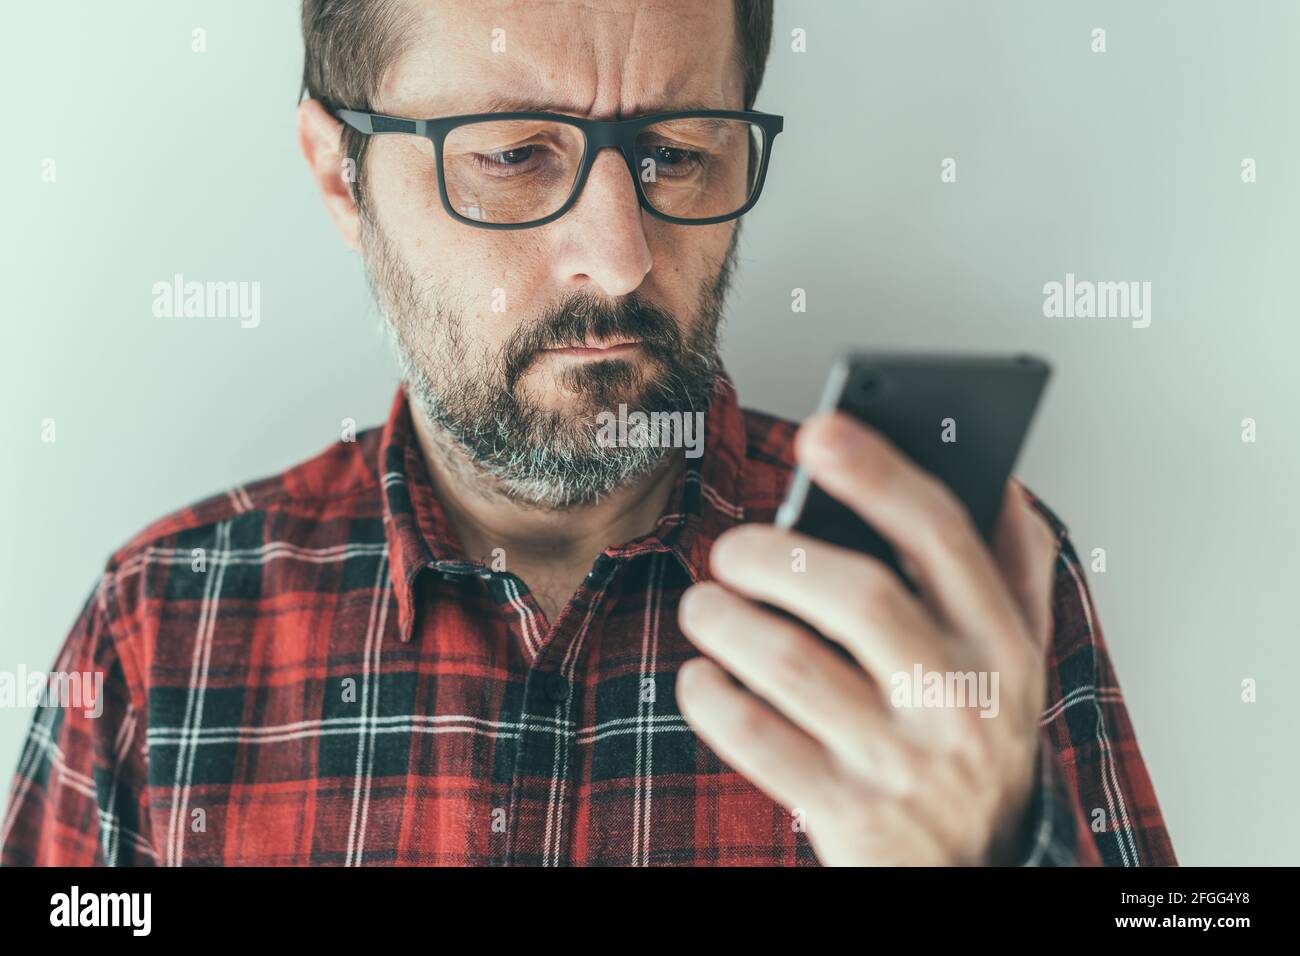 Kopfbild eines Mannes mit mittlerem Erwachsenenalter, der SMS-Benachrichtigungen auf dem Mobiltelefon liest, Nahaufnahme mit selektivem Fokus Stockfoto